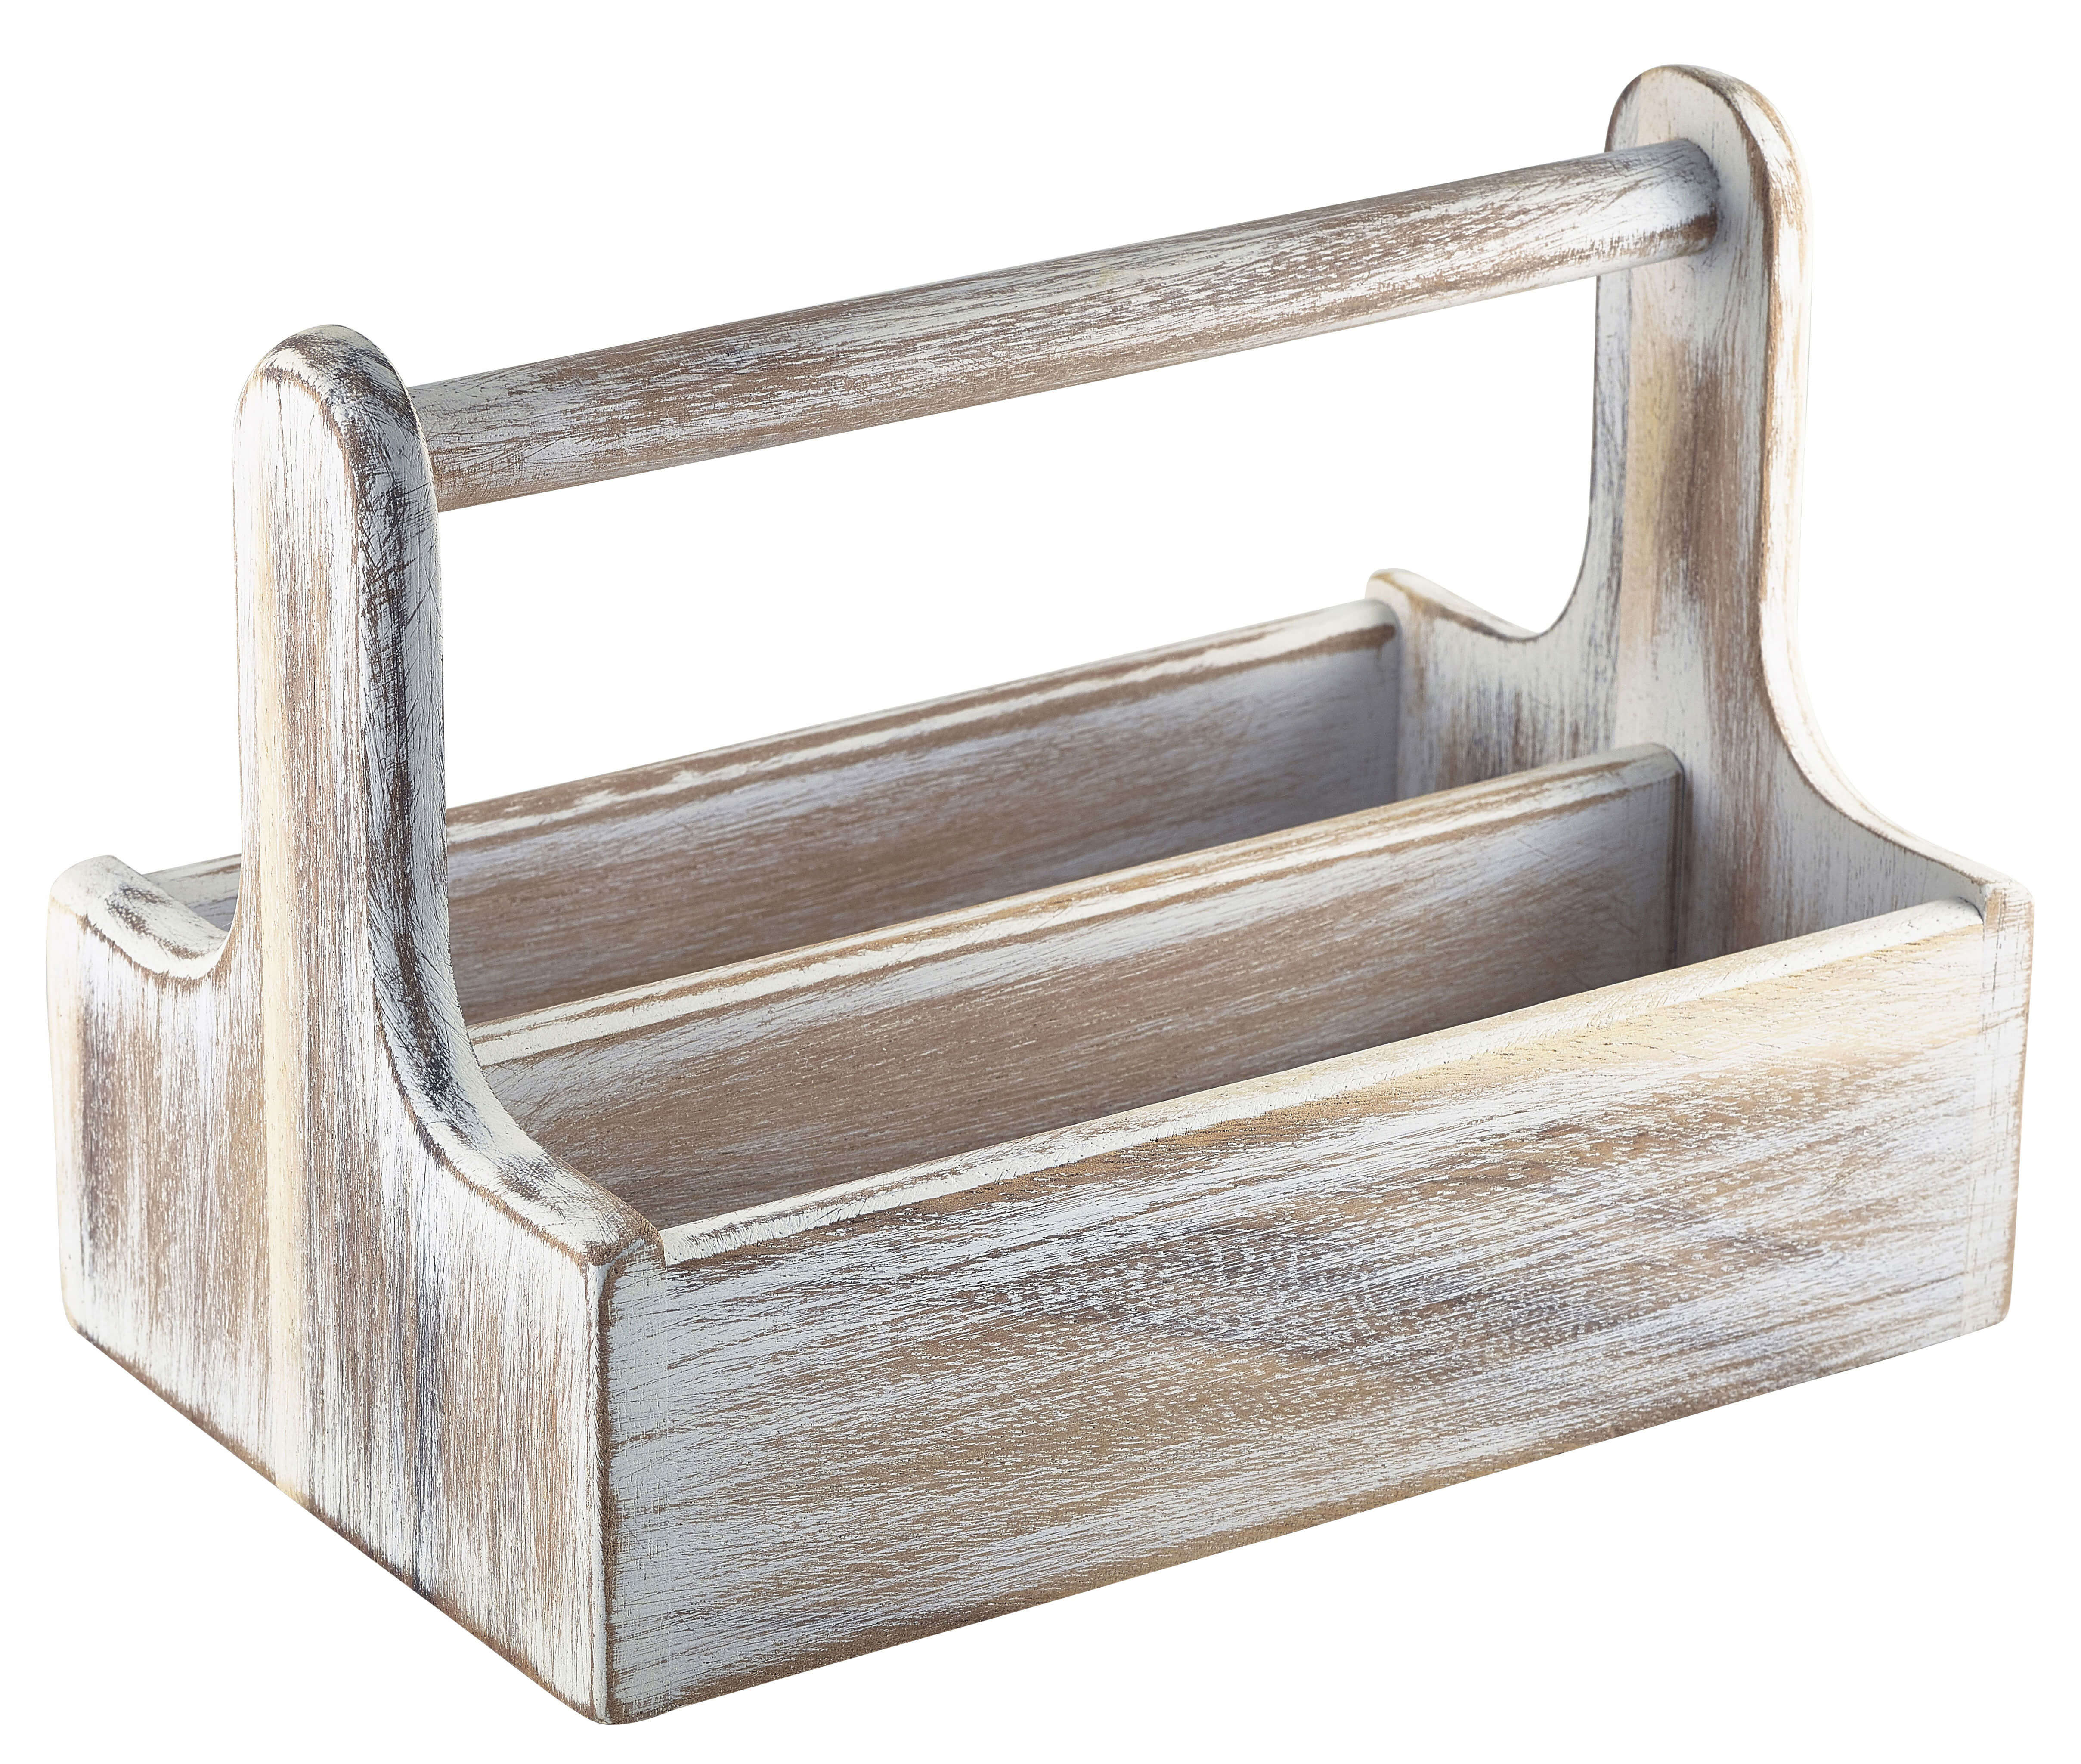 Table Caddy / Bar Organizer, Holz, weiß - 25x15,7x18cm